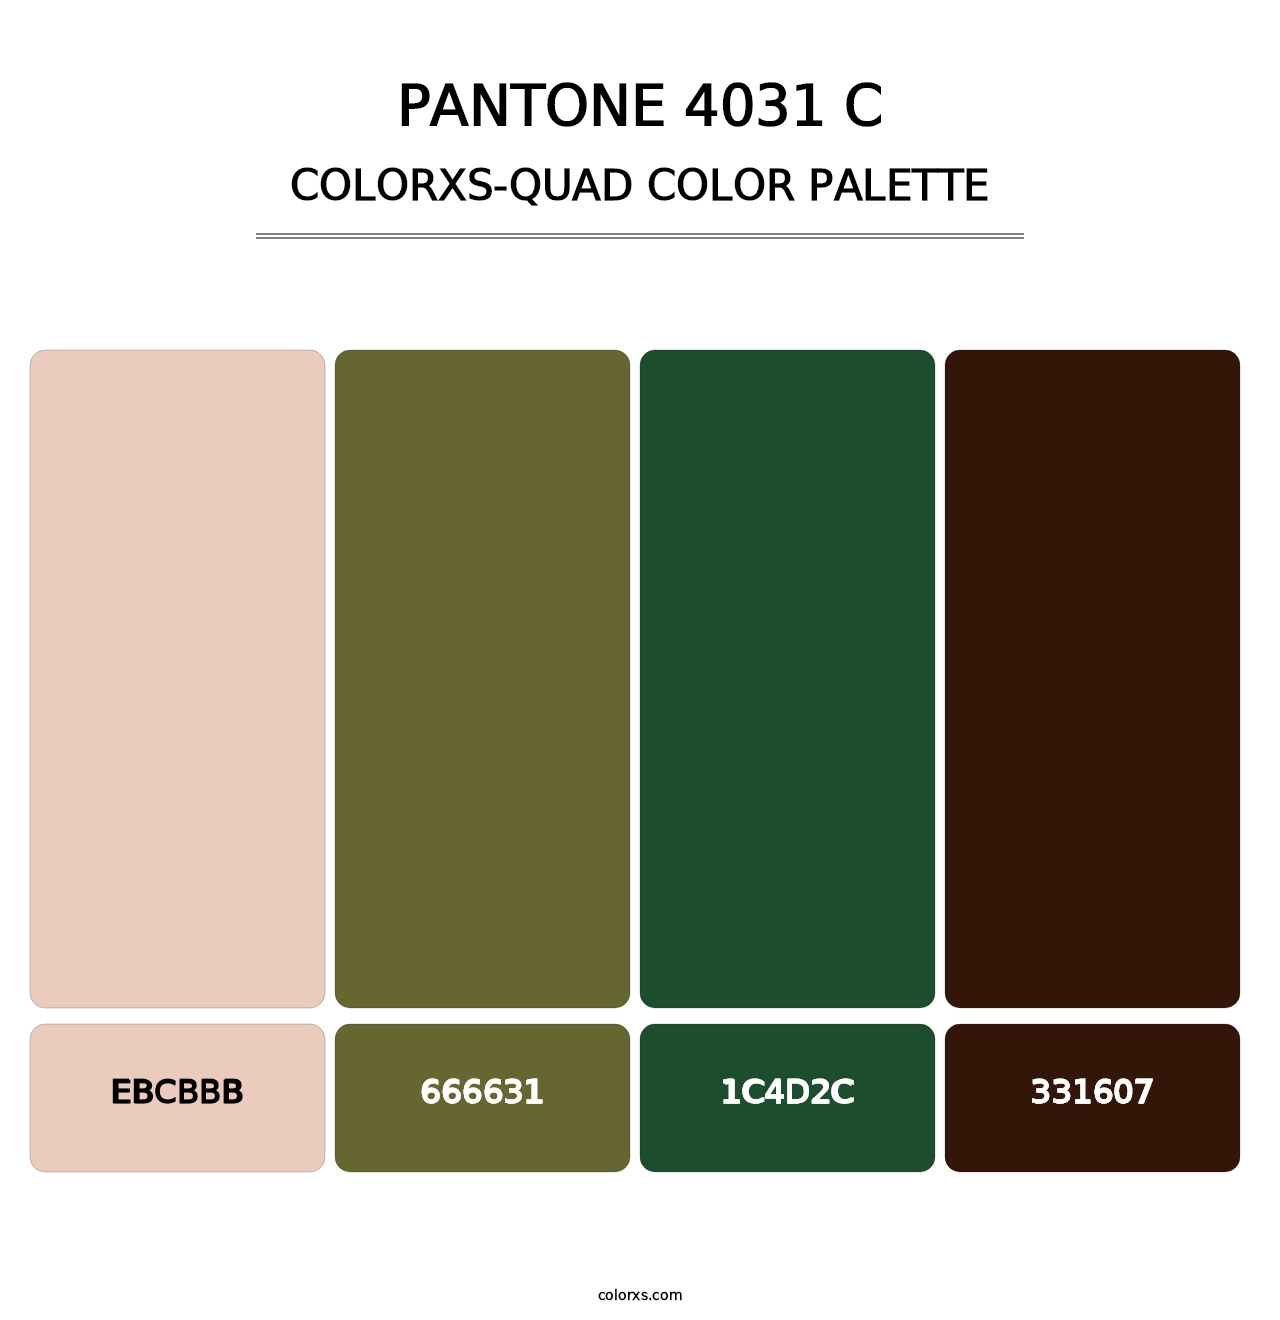 PANTONE 4031 C - Colorxs Quad Palette